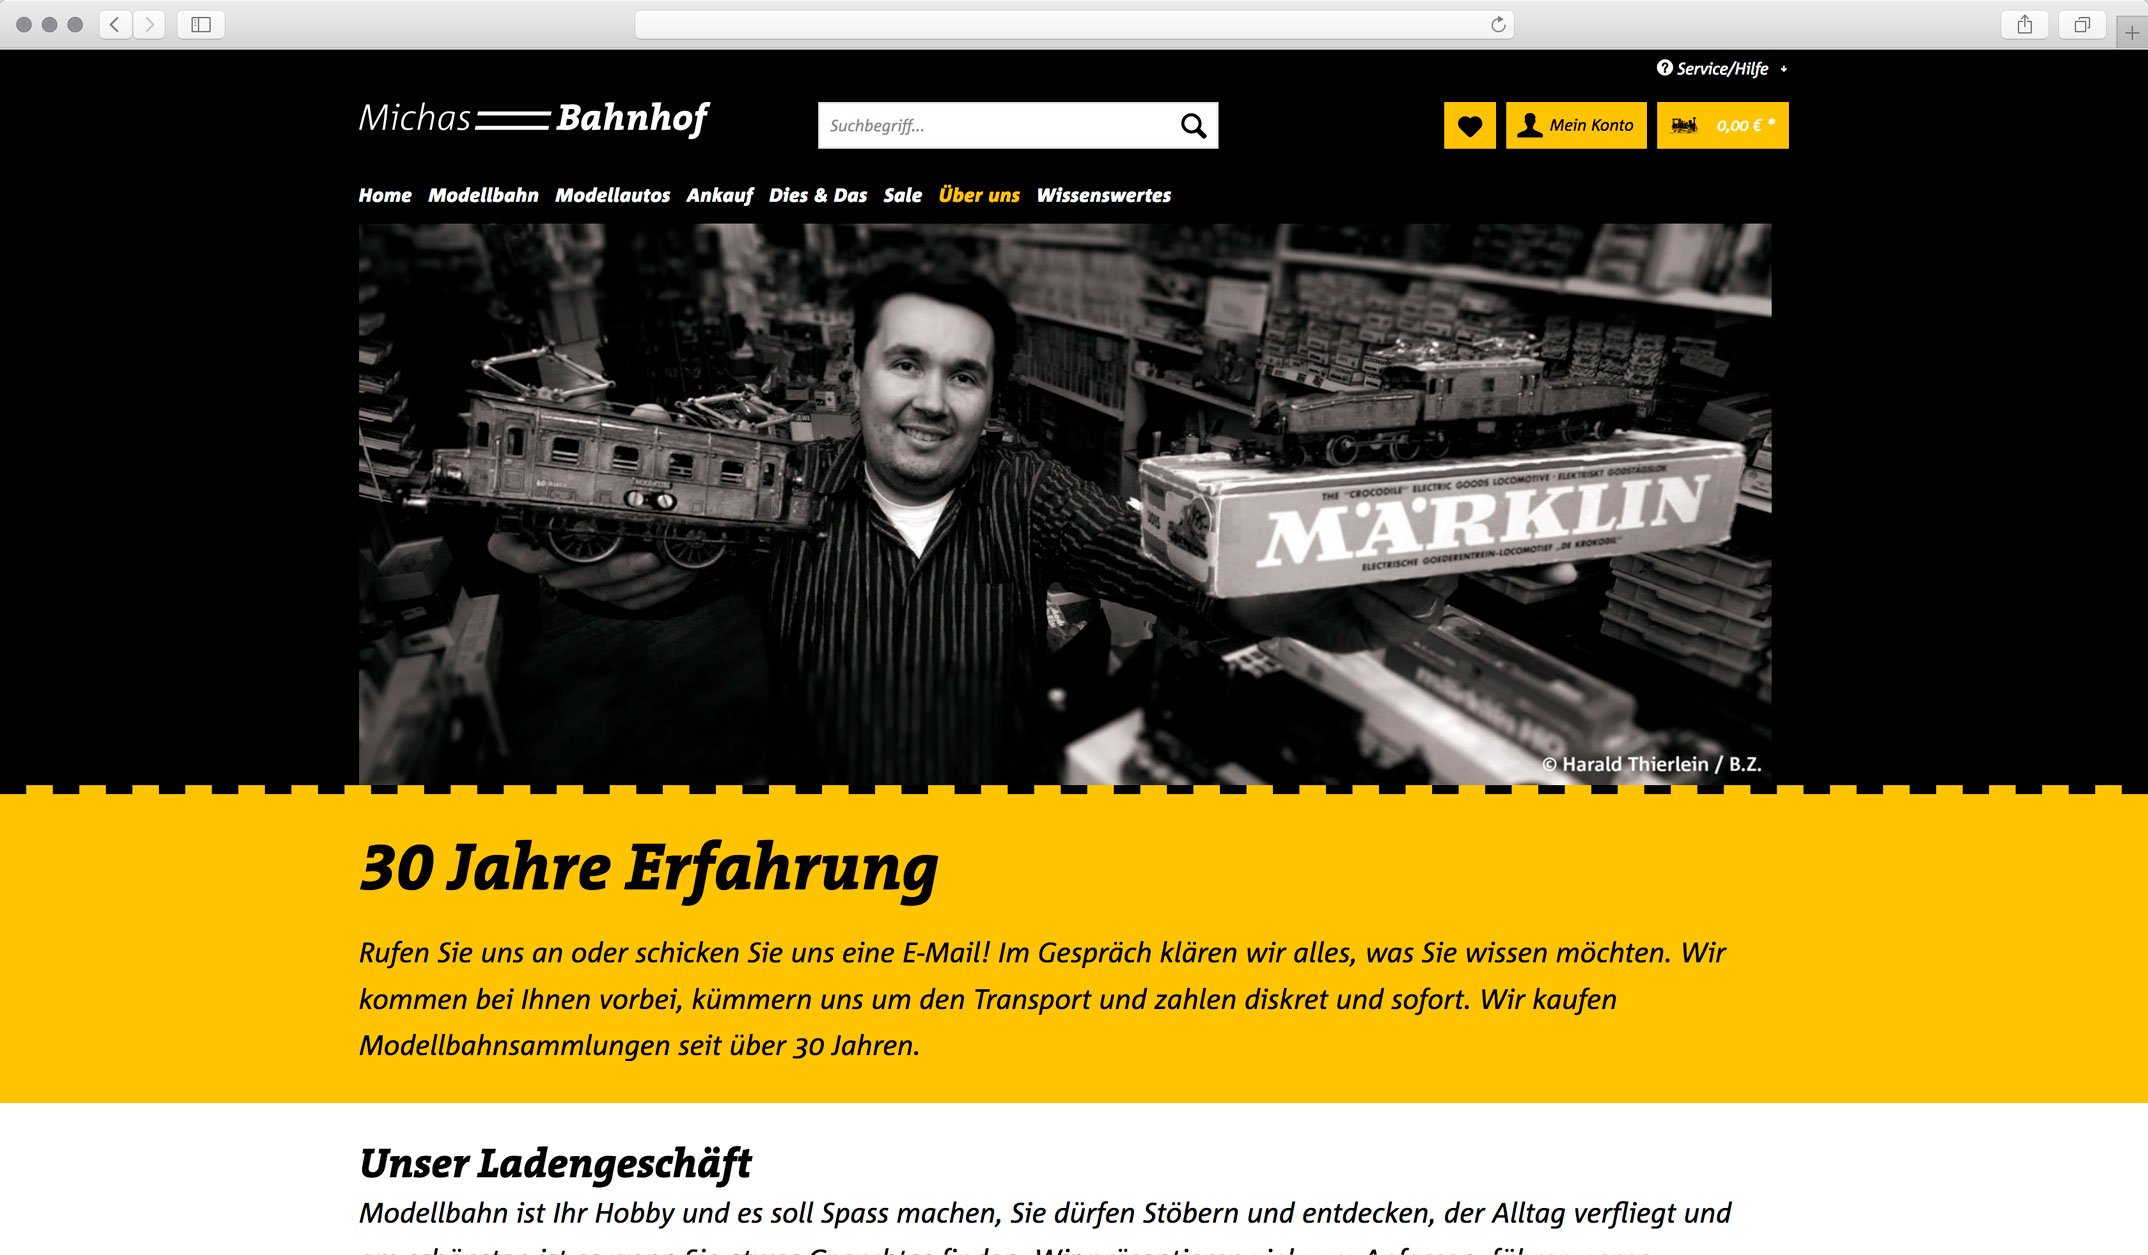 Webdesign, Unterseite Über uns – Corporate Website, Webshop, Michas Bahnhof Berlin